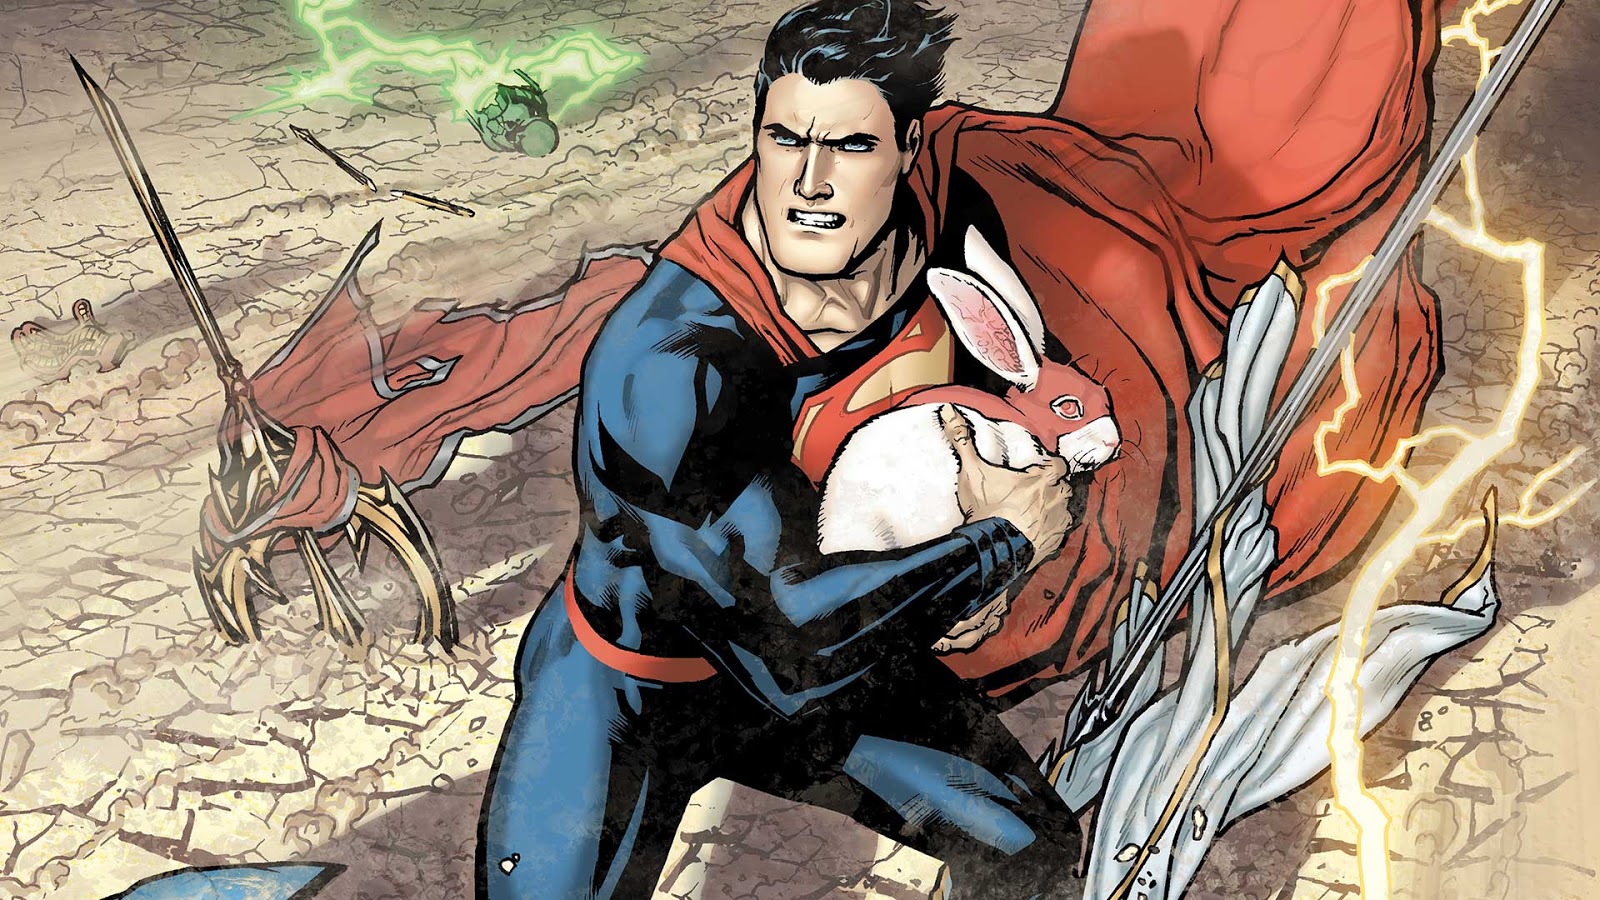 DC COMICS PRESENTS #39 SUPERMAN & PLASTIC MAN